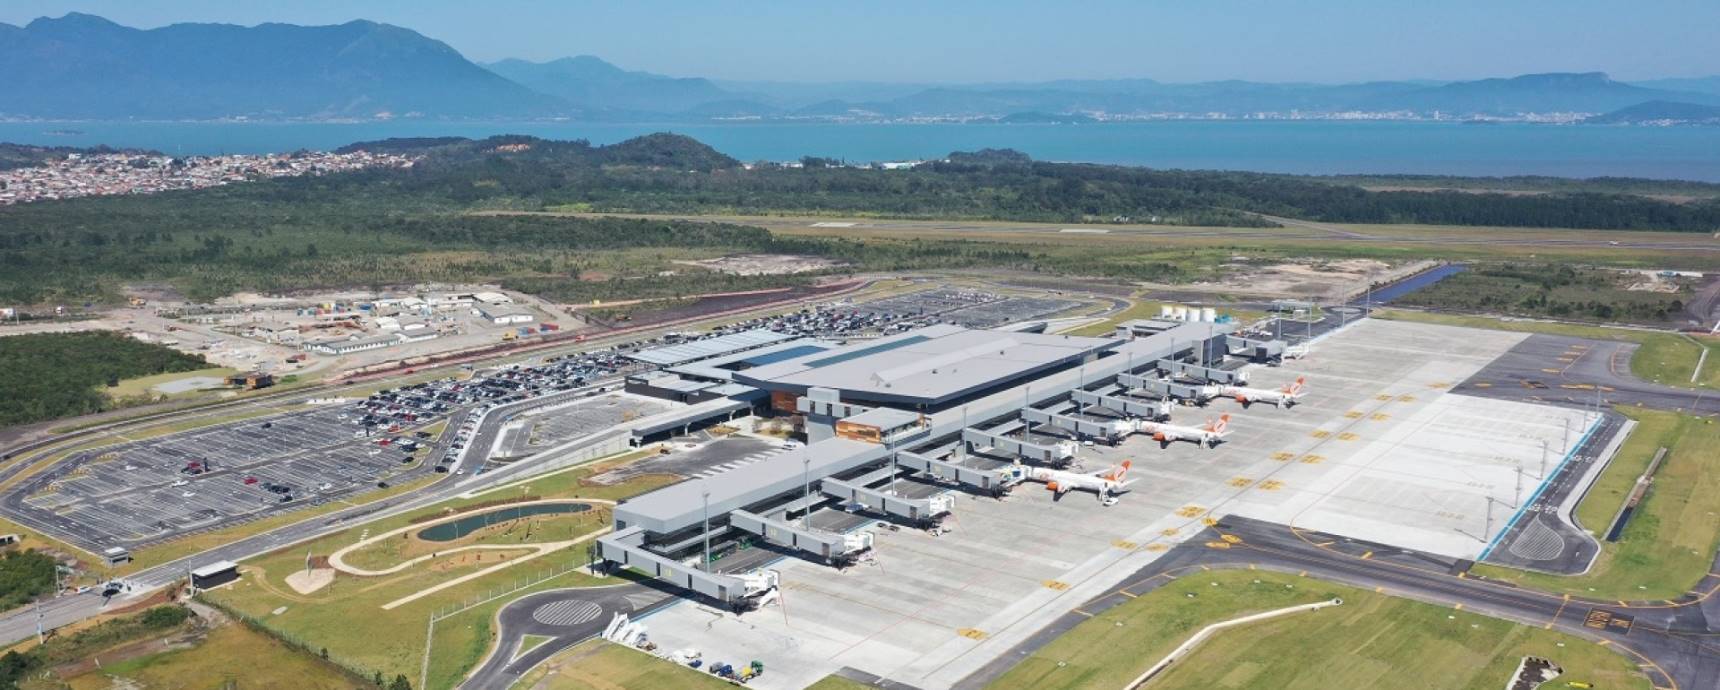 Balanço: novo aeroporto de Florianópolis registra salto de qualidade nas avaliações de passageiros já no primeiro mês de operação